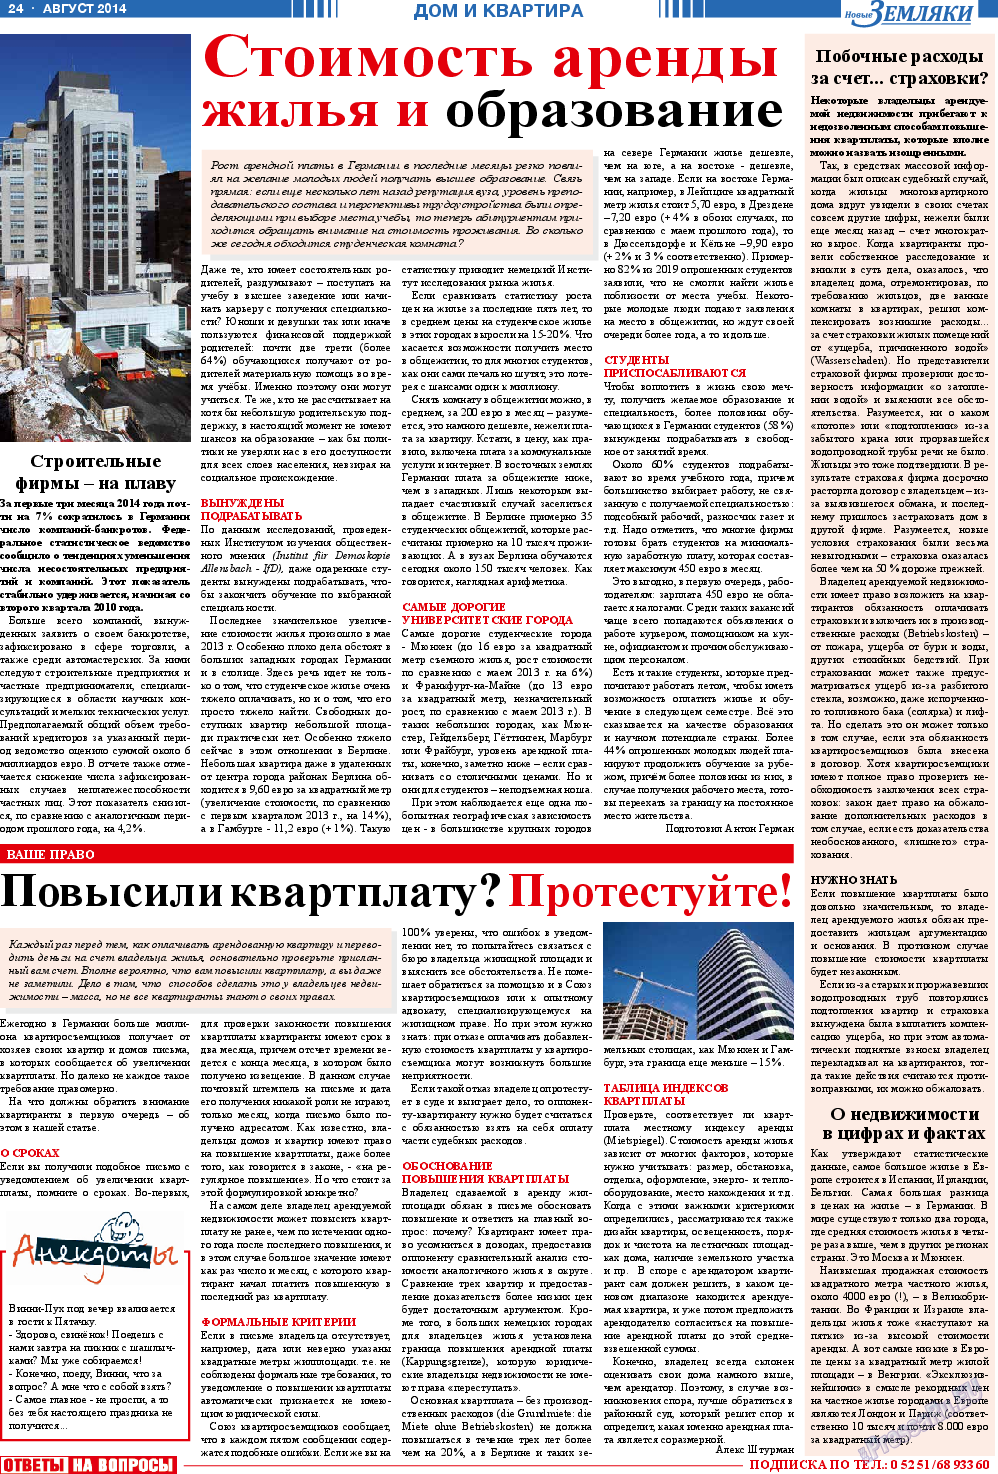 Новые Земляки, газета. 2014 №8 стр.24